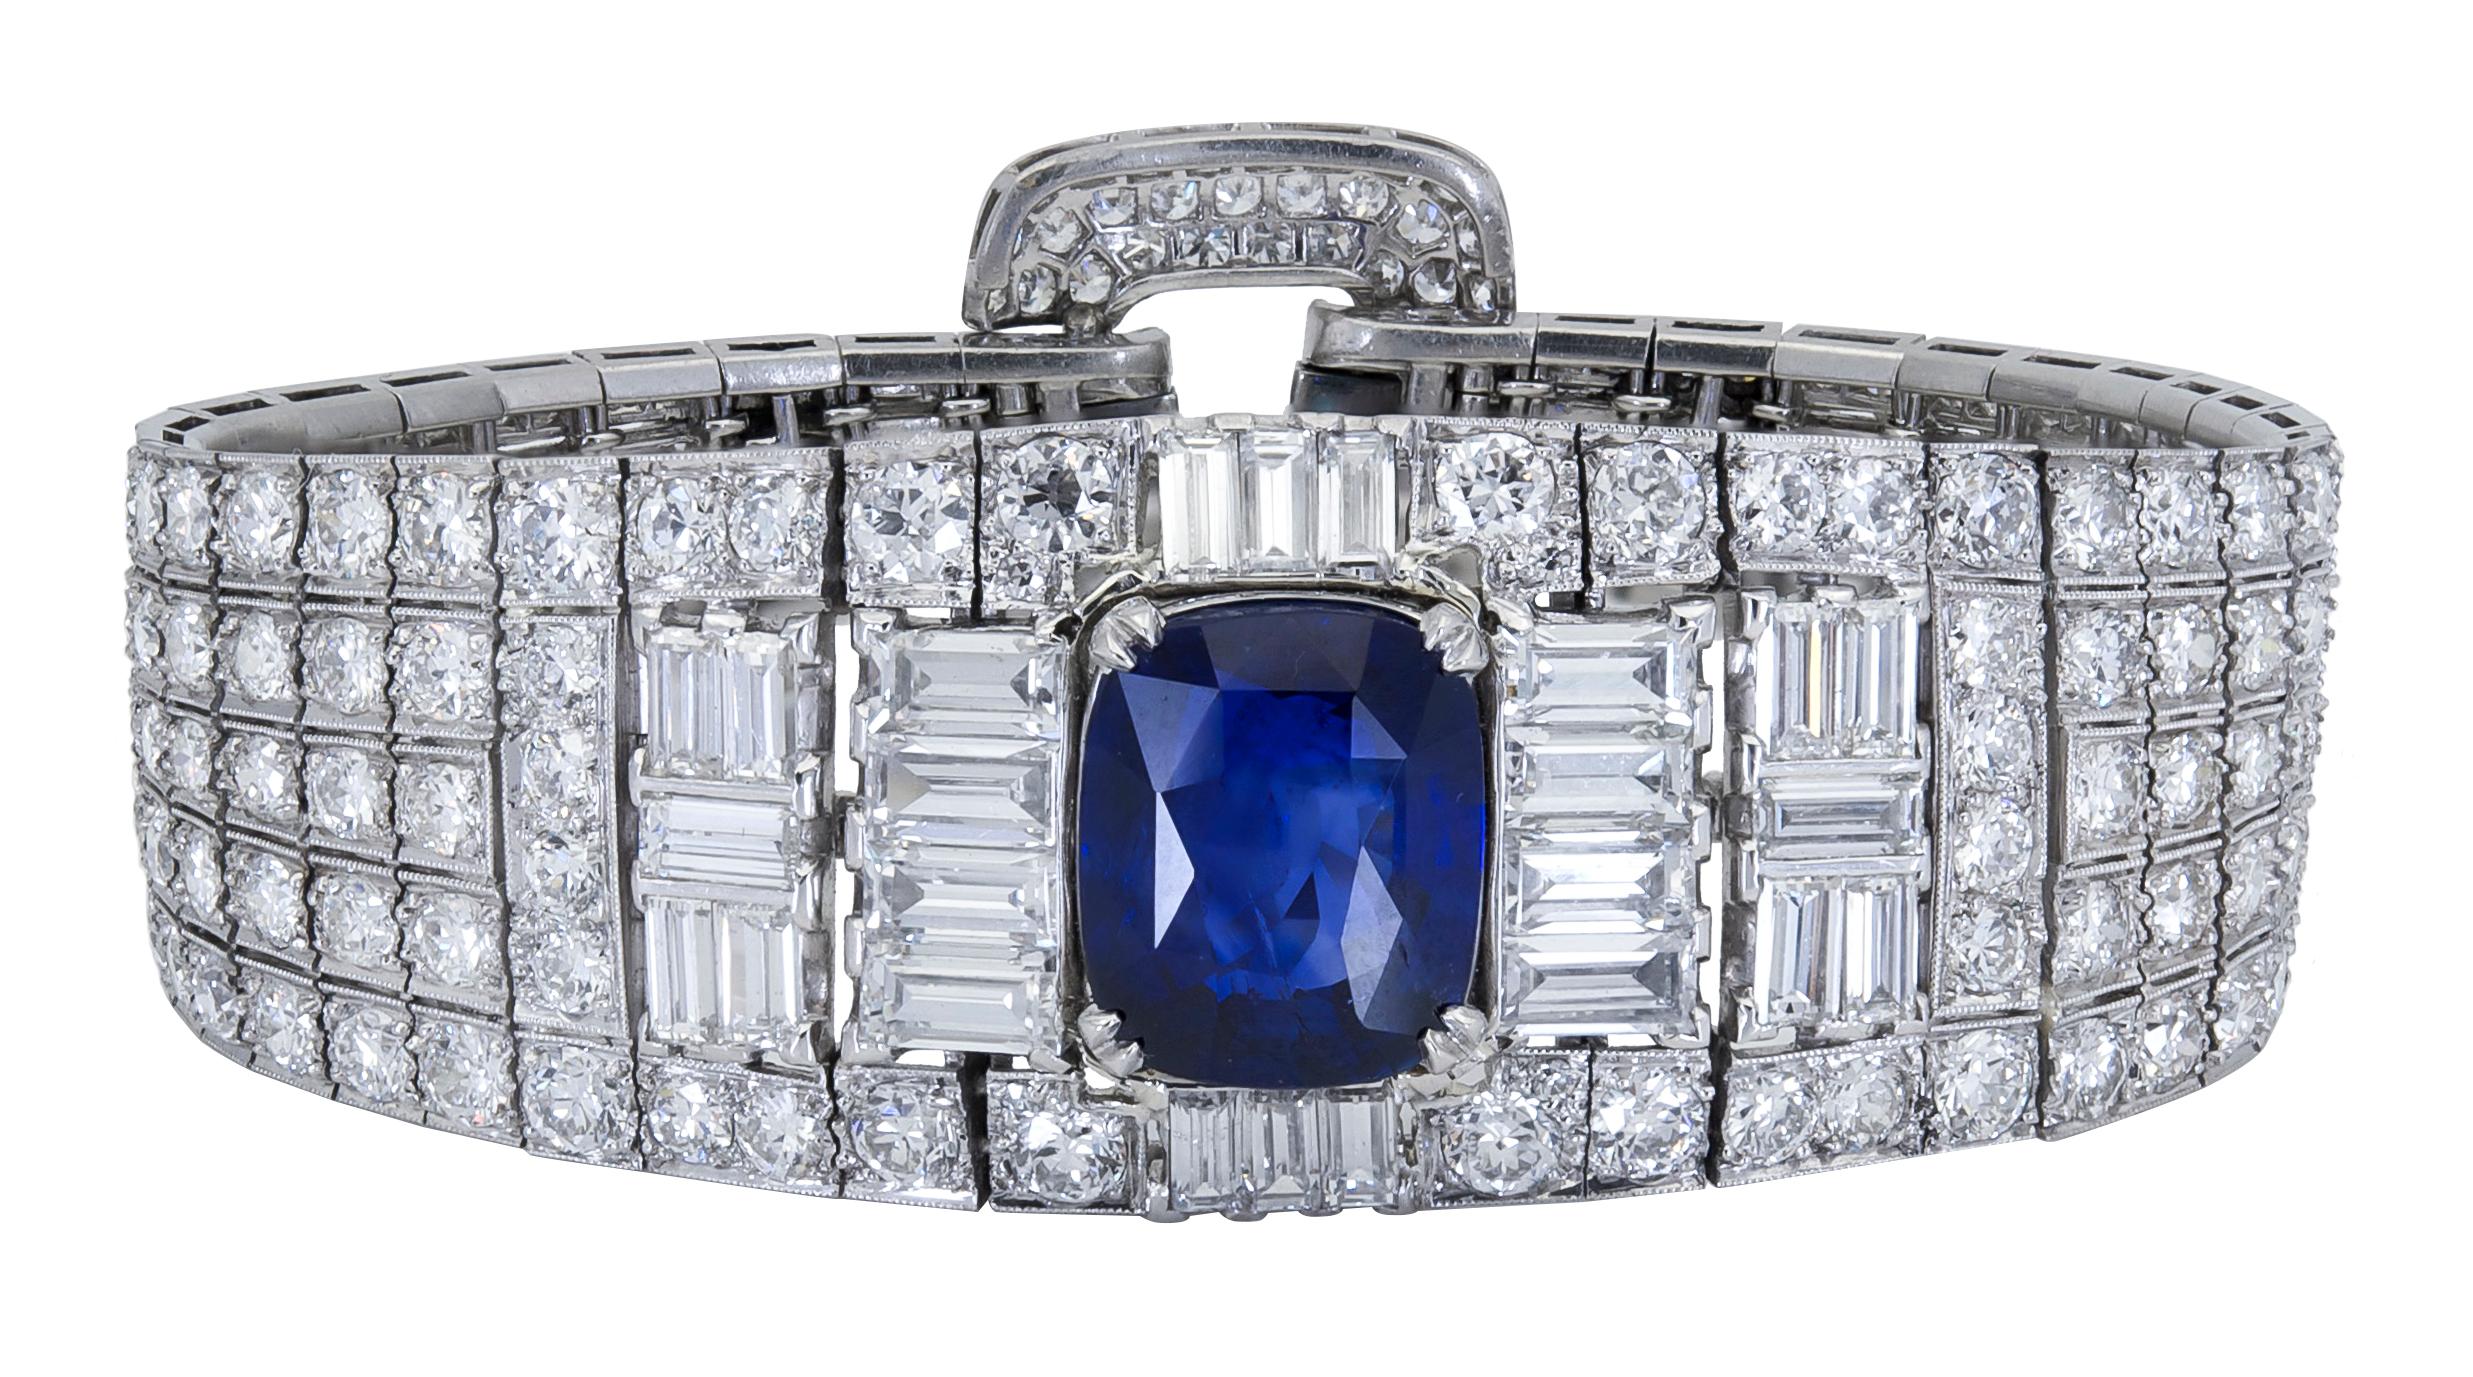 Un très beau bracelet de l'époque art déco mettant en valeur un saphir bleu riche en taille coussin, serti dans une monture en platine incrustée de diamants. Le bracelet est fabriqué avec un savoir-faire exceptionnel et est en excellent état. 
Le